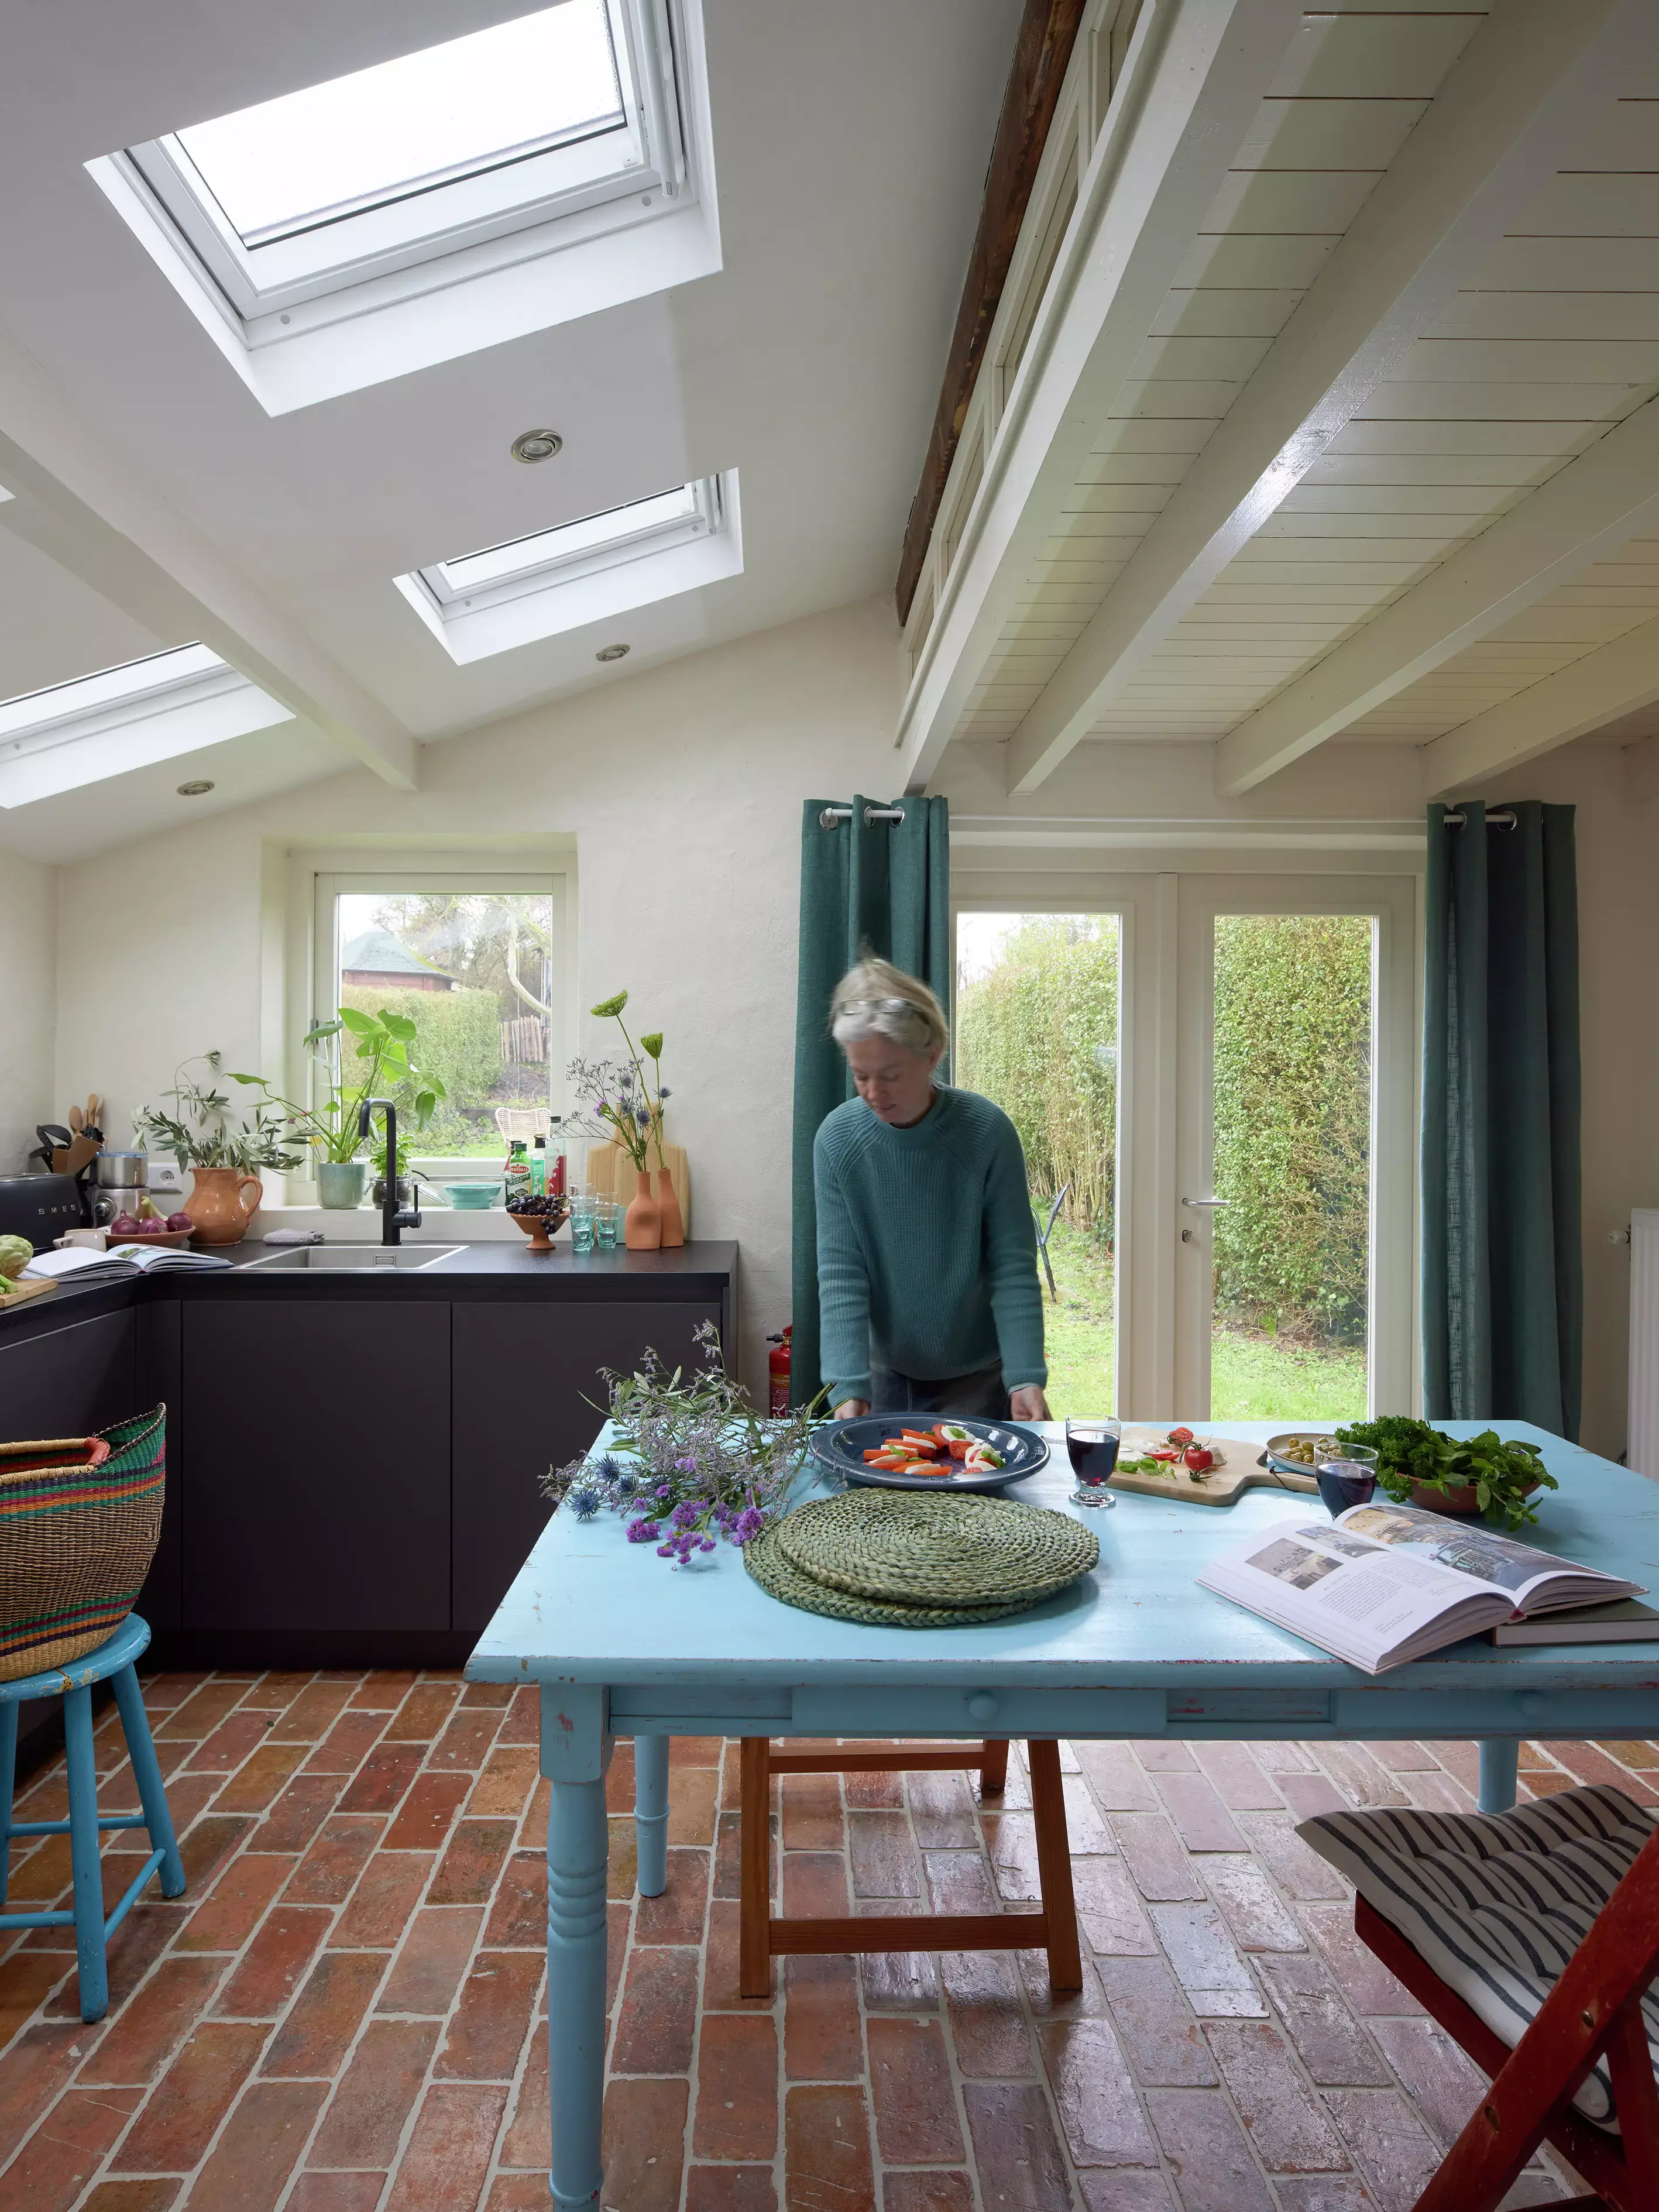 Cuisine confortable avec des carreaux en terre cuite et des fenêtres de toit VELUX au-dessus d'une table bleue.